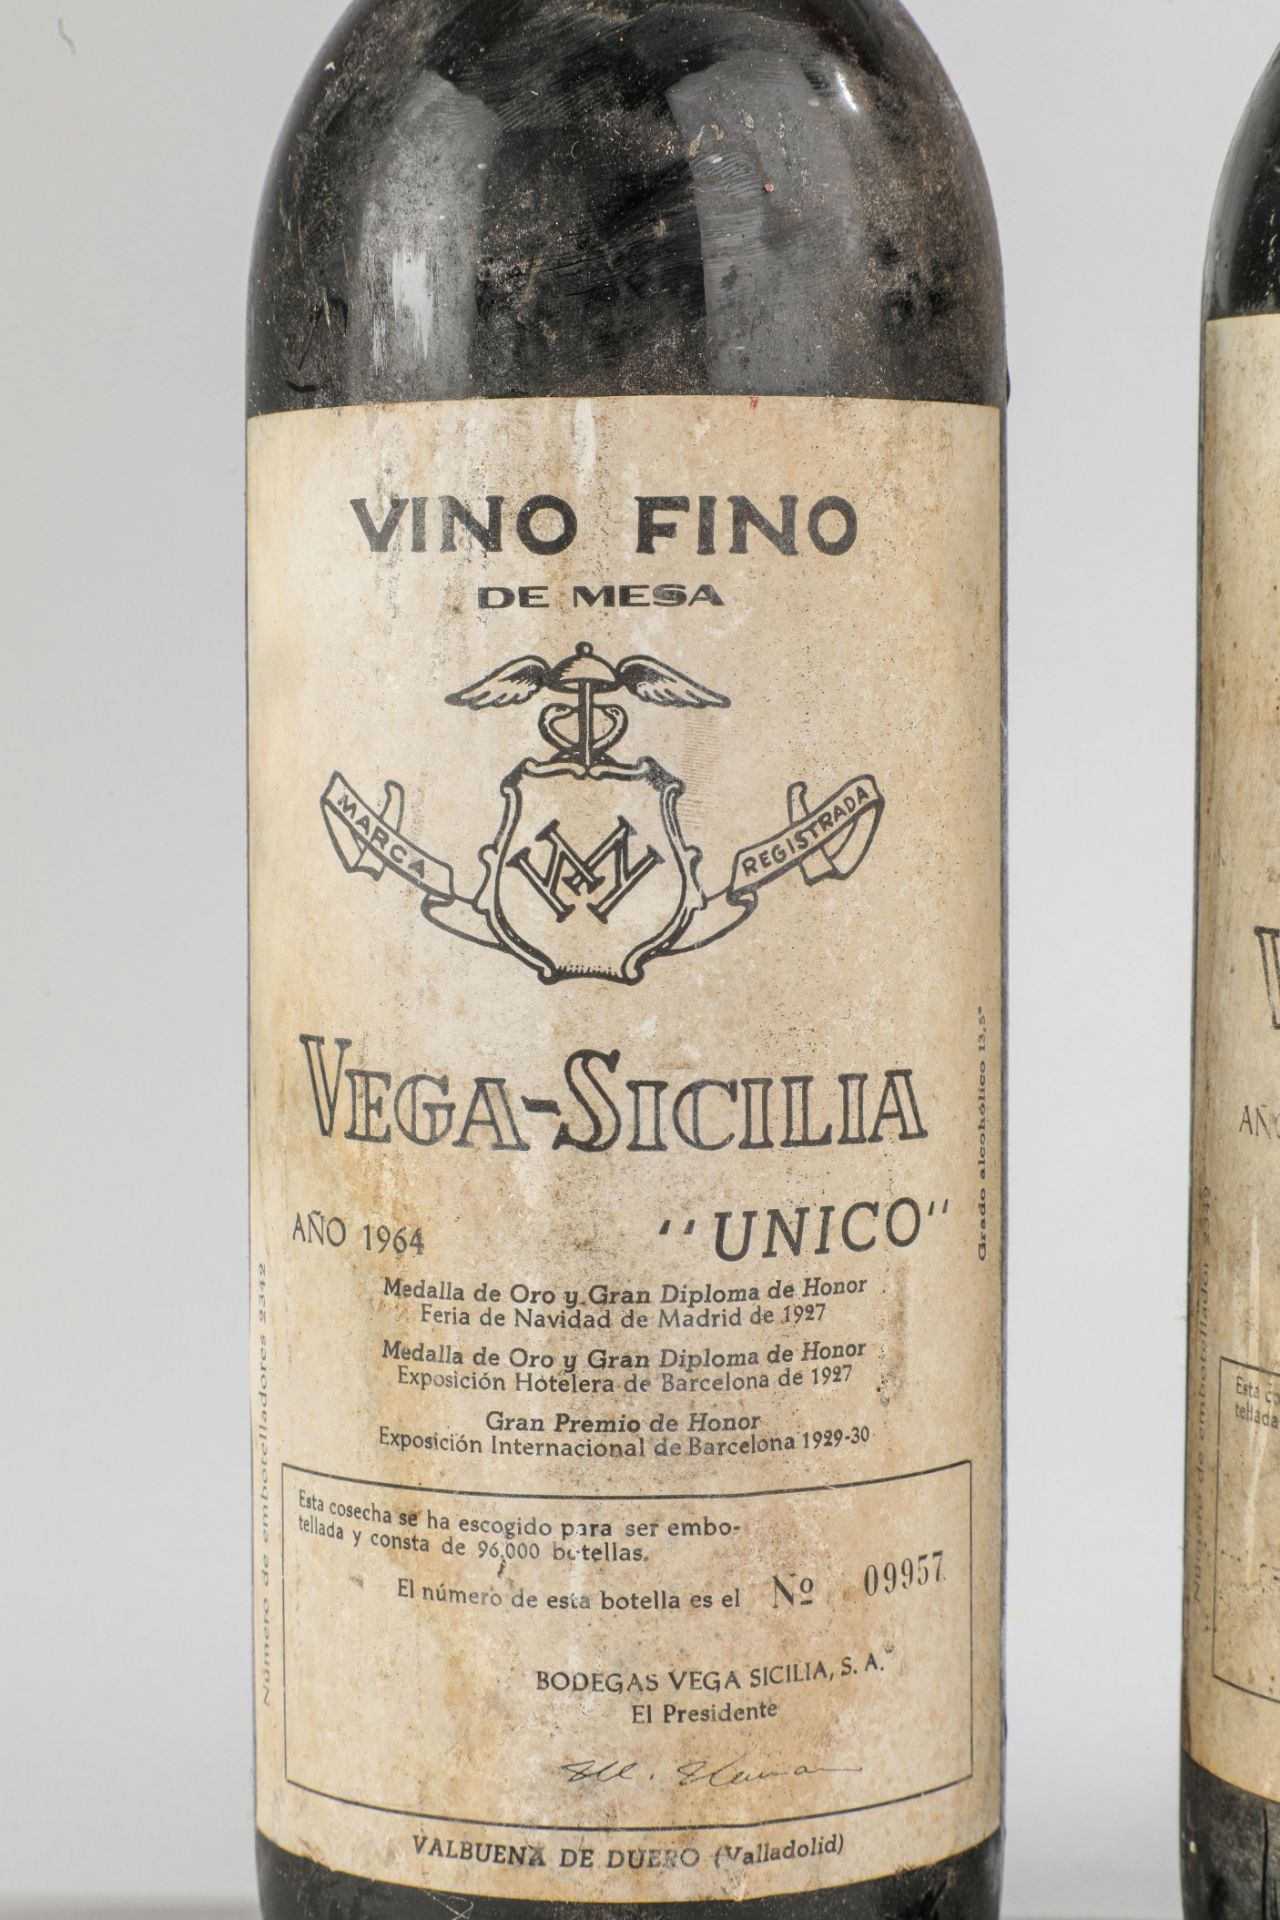 VEGA SICILIA UNICO. 1964. 2 Bouteilles N° 09957 et N°17497 sur production de 96 000 bouteilles. - Image 2 of 5